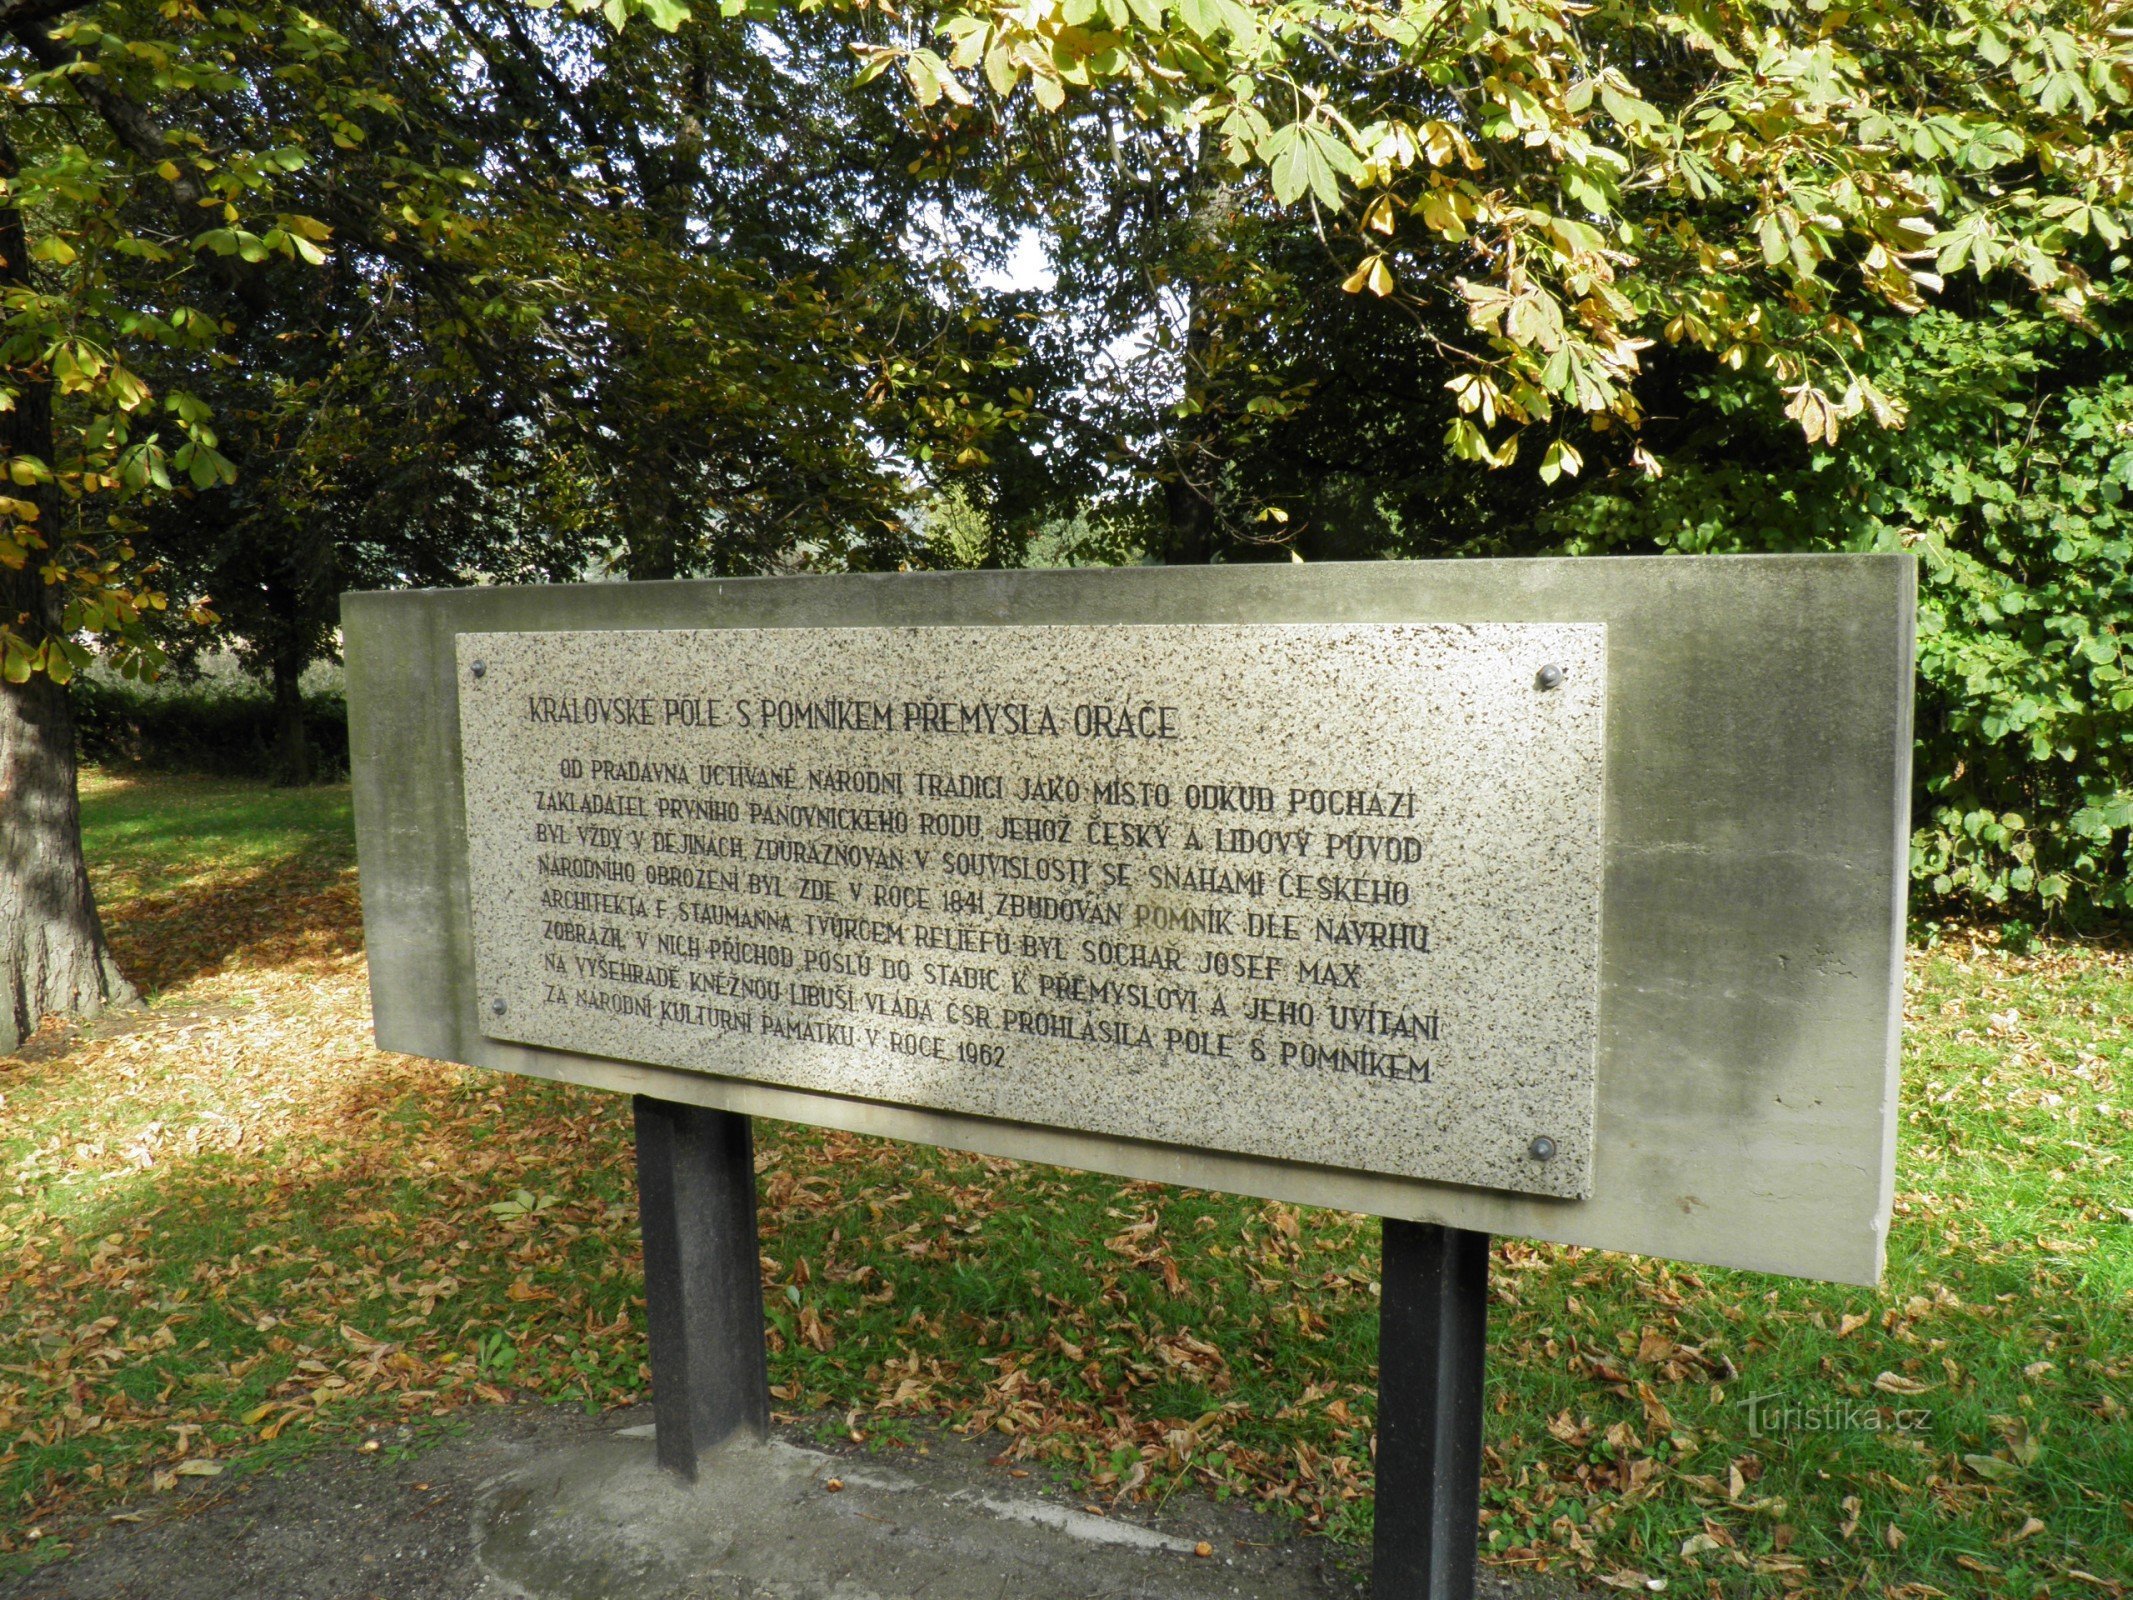 プシェミシル・オラーチの記念碑。